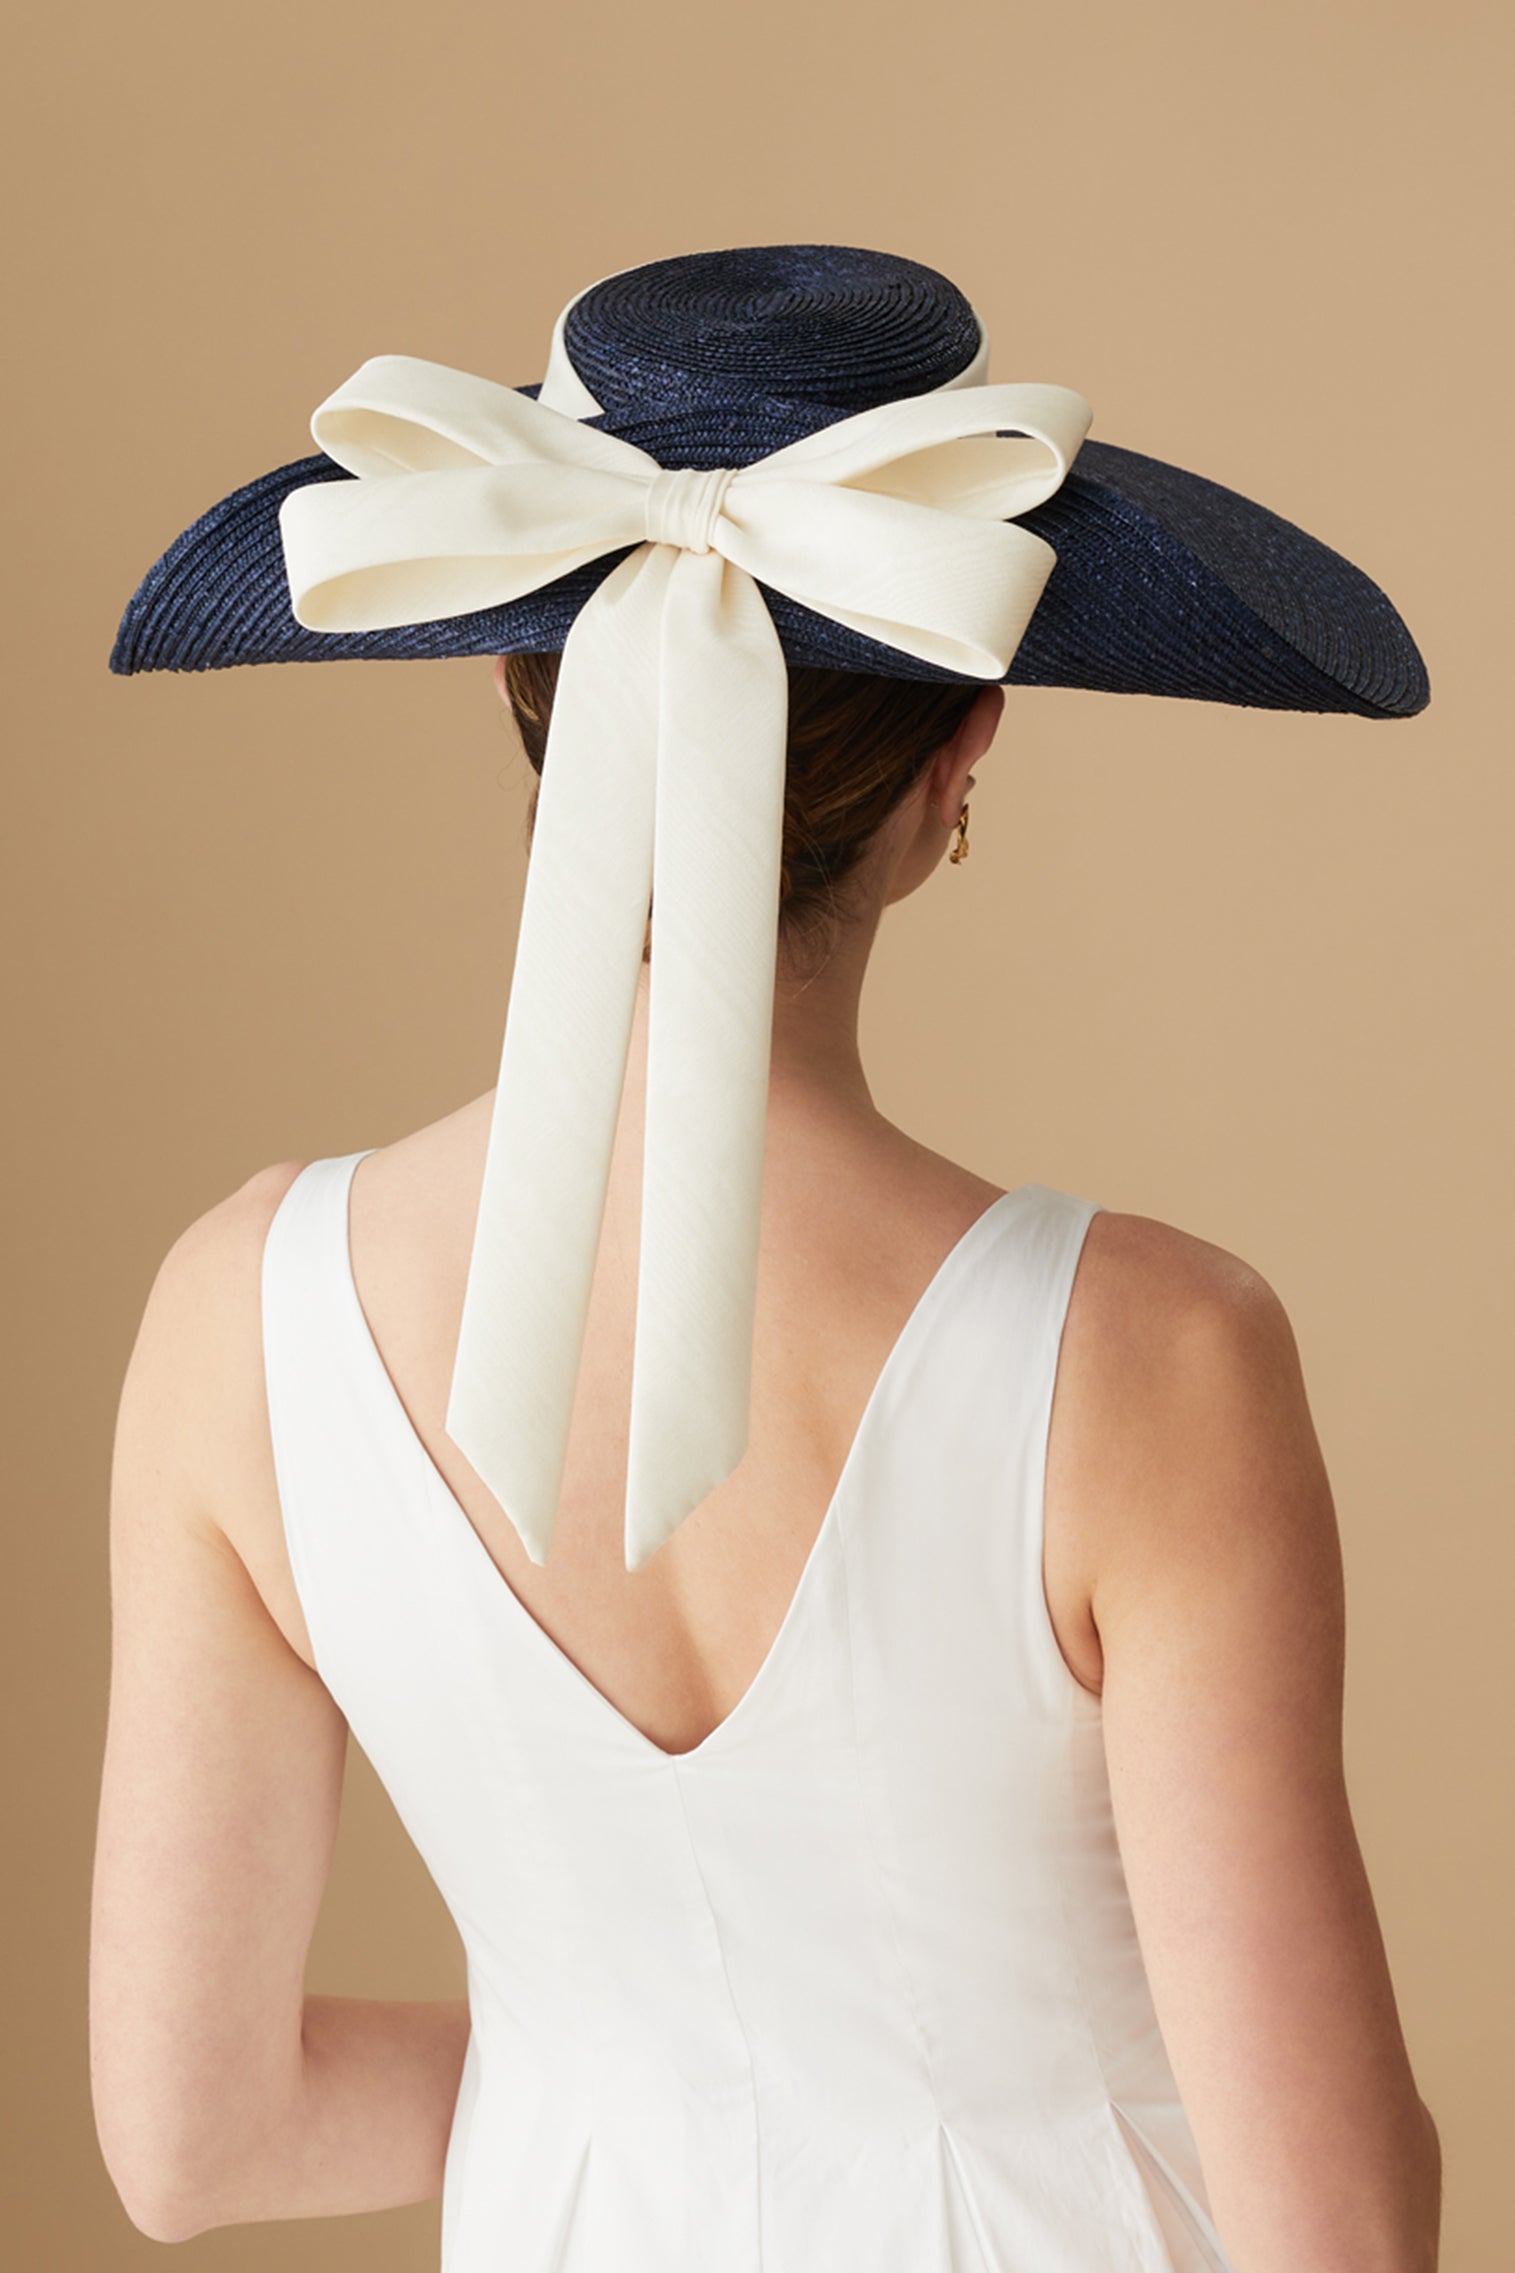 Lady Grey Navy Wide Brim Hat -  - Lock & Co. Hatters London UK